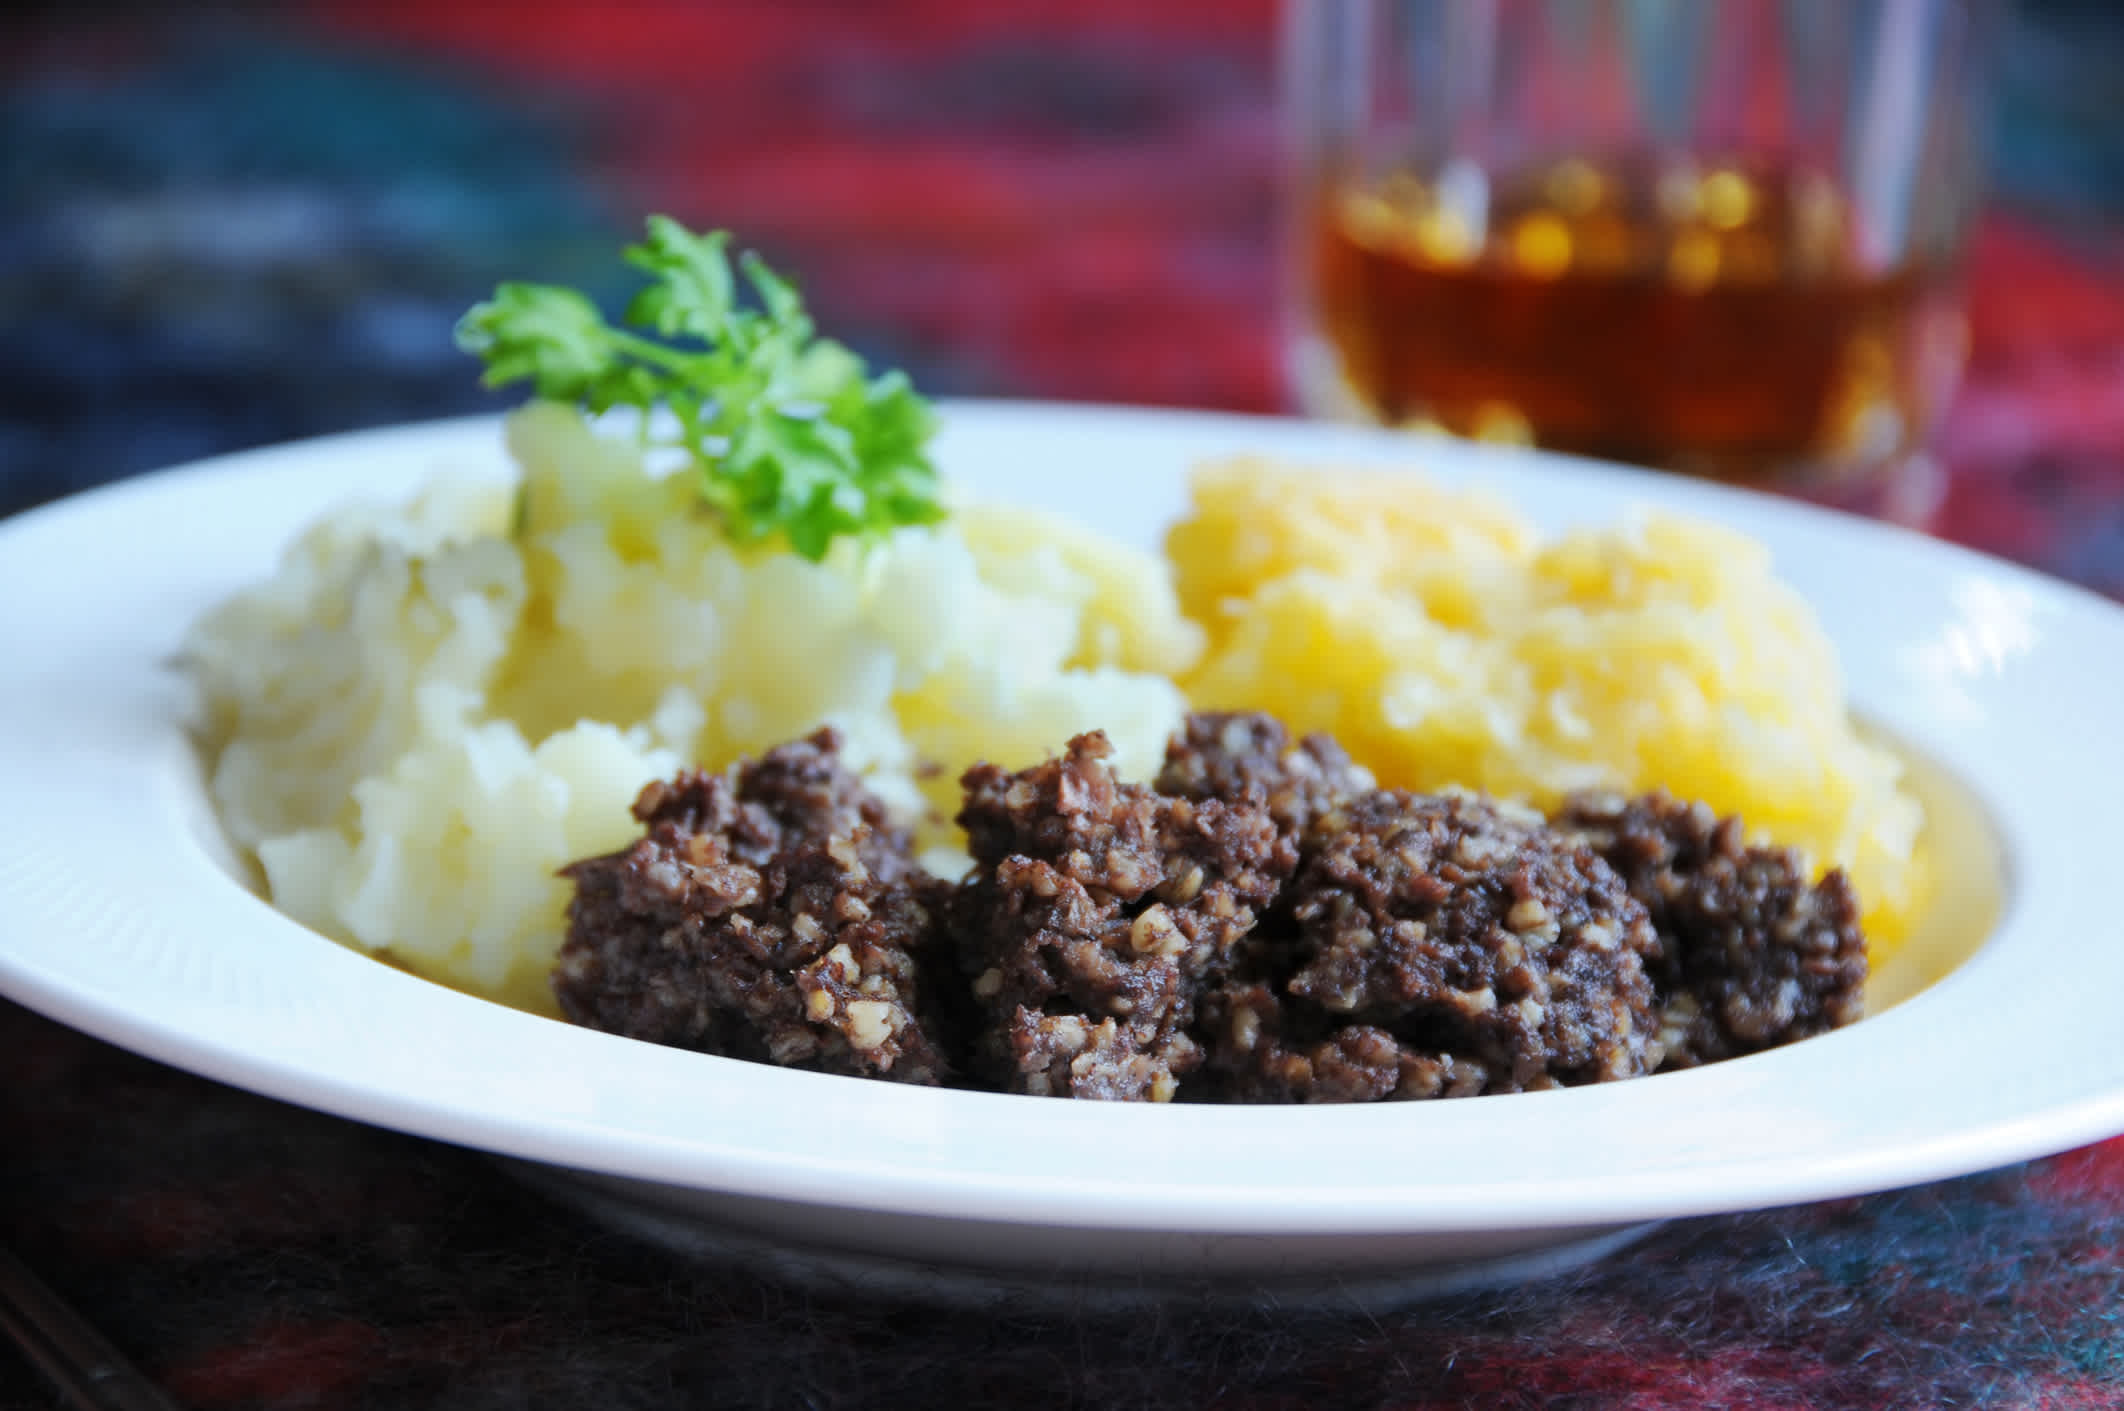 Le haggis, une spécialité écossaise à base d'abats fourrés dans un estomac de mouton à découvrir pendant votre voyage en Écosse.